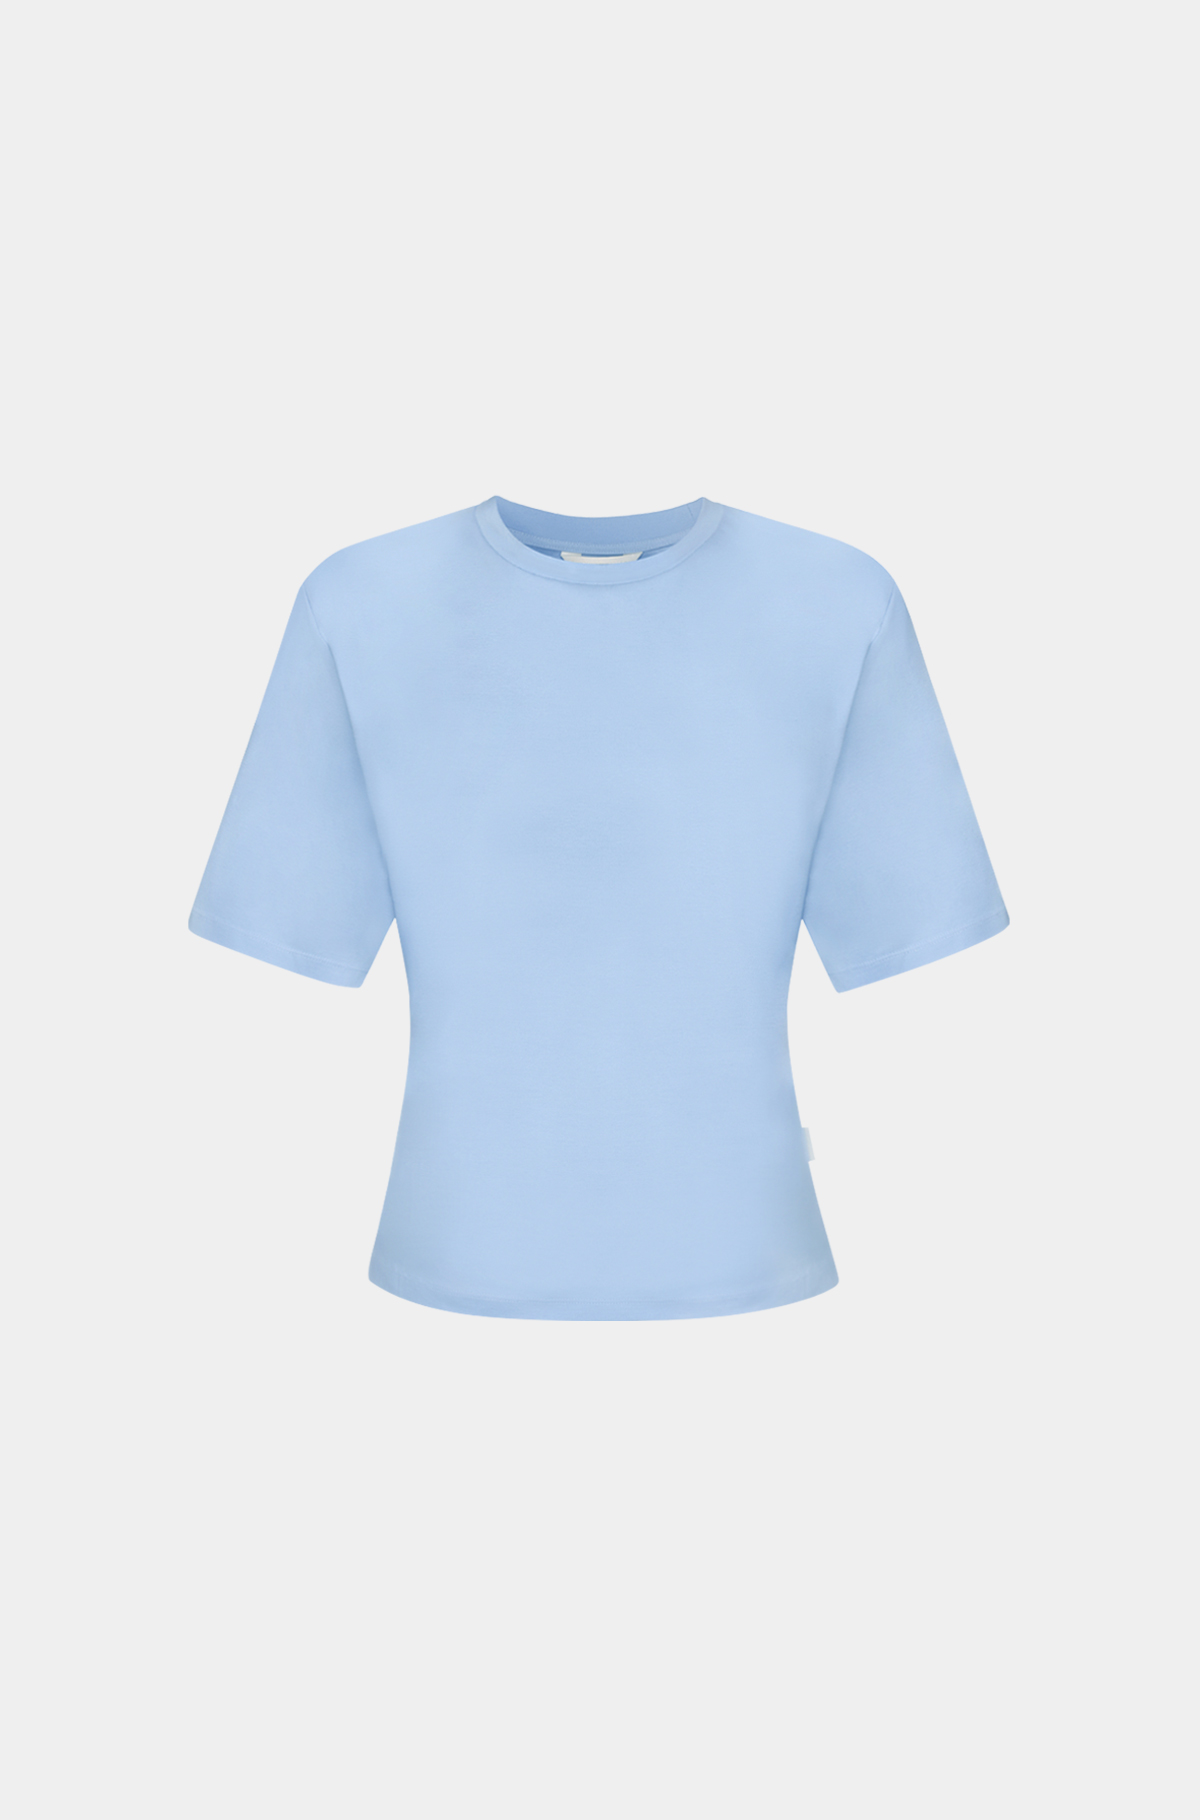 클린 슬림 티셔츠 - 위스피 블루